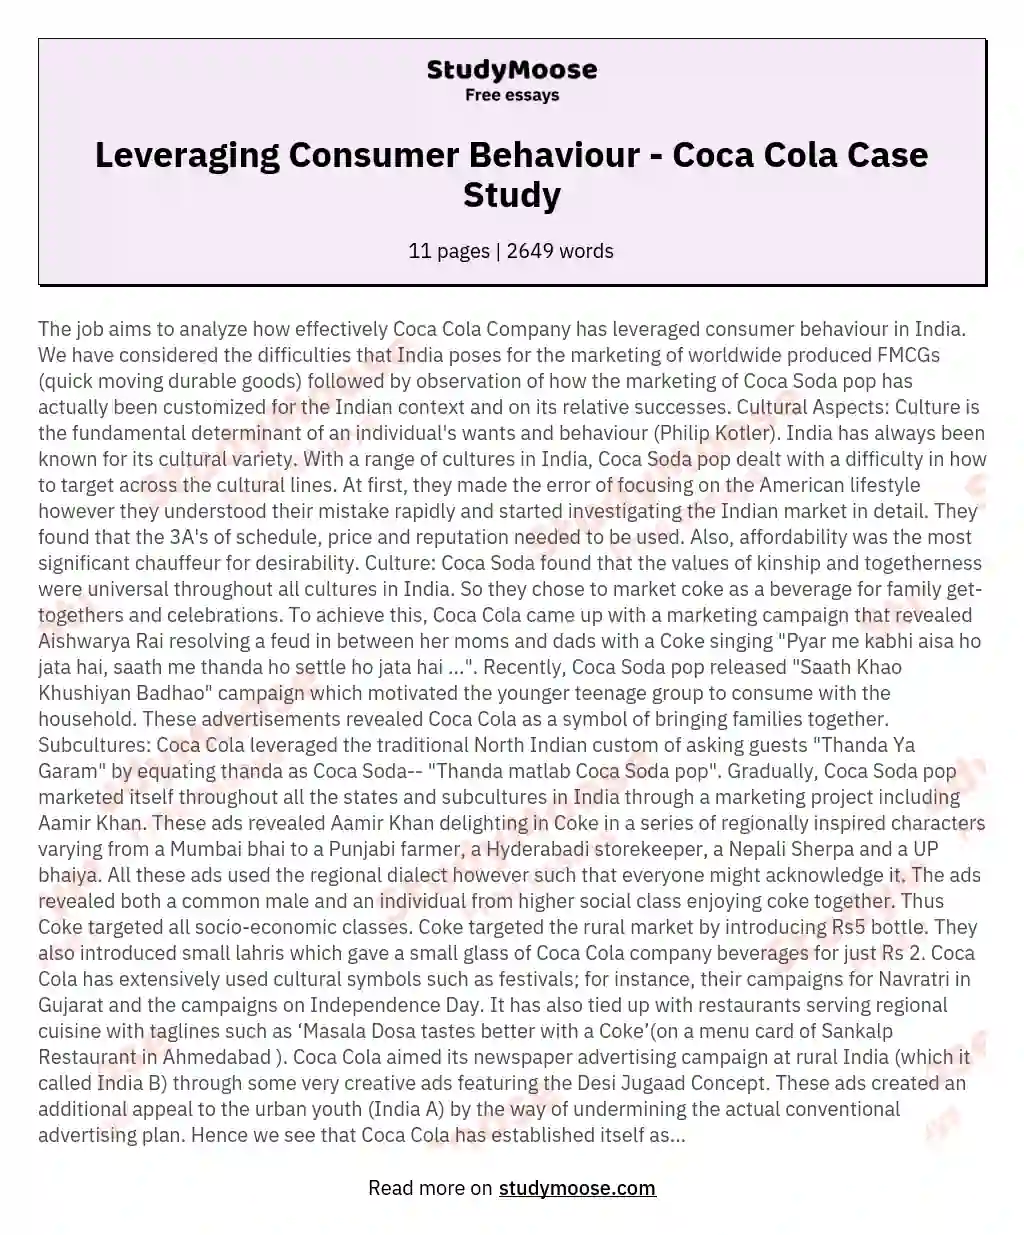 Leveraging Consumer Behaviour - Coca Cola Case Study